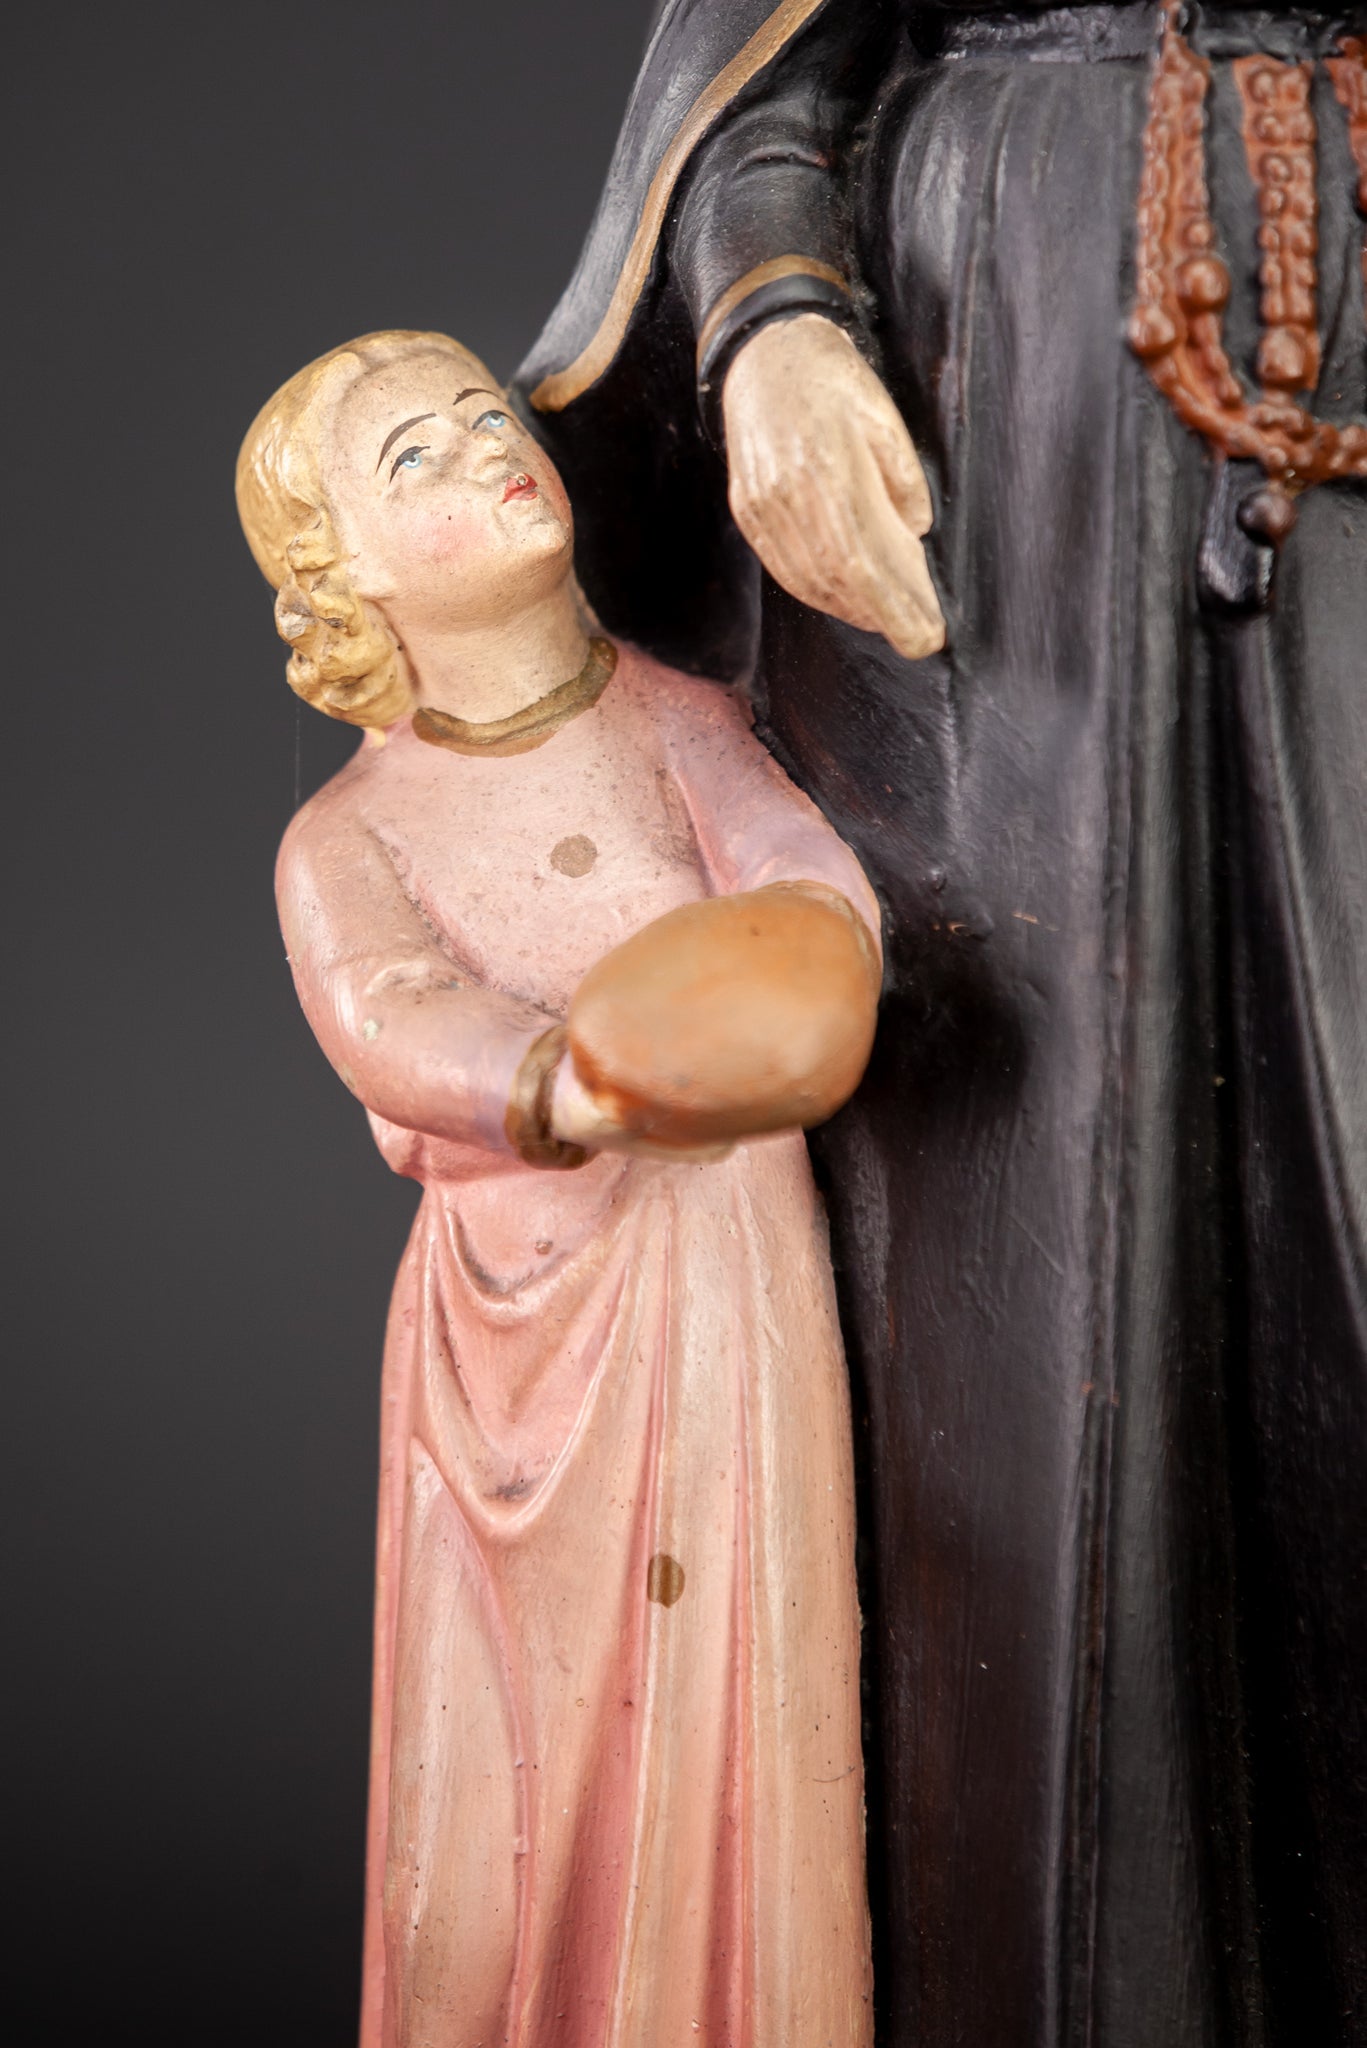 St Gerard Majella Plaster Statue 16.5"